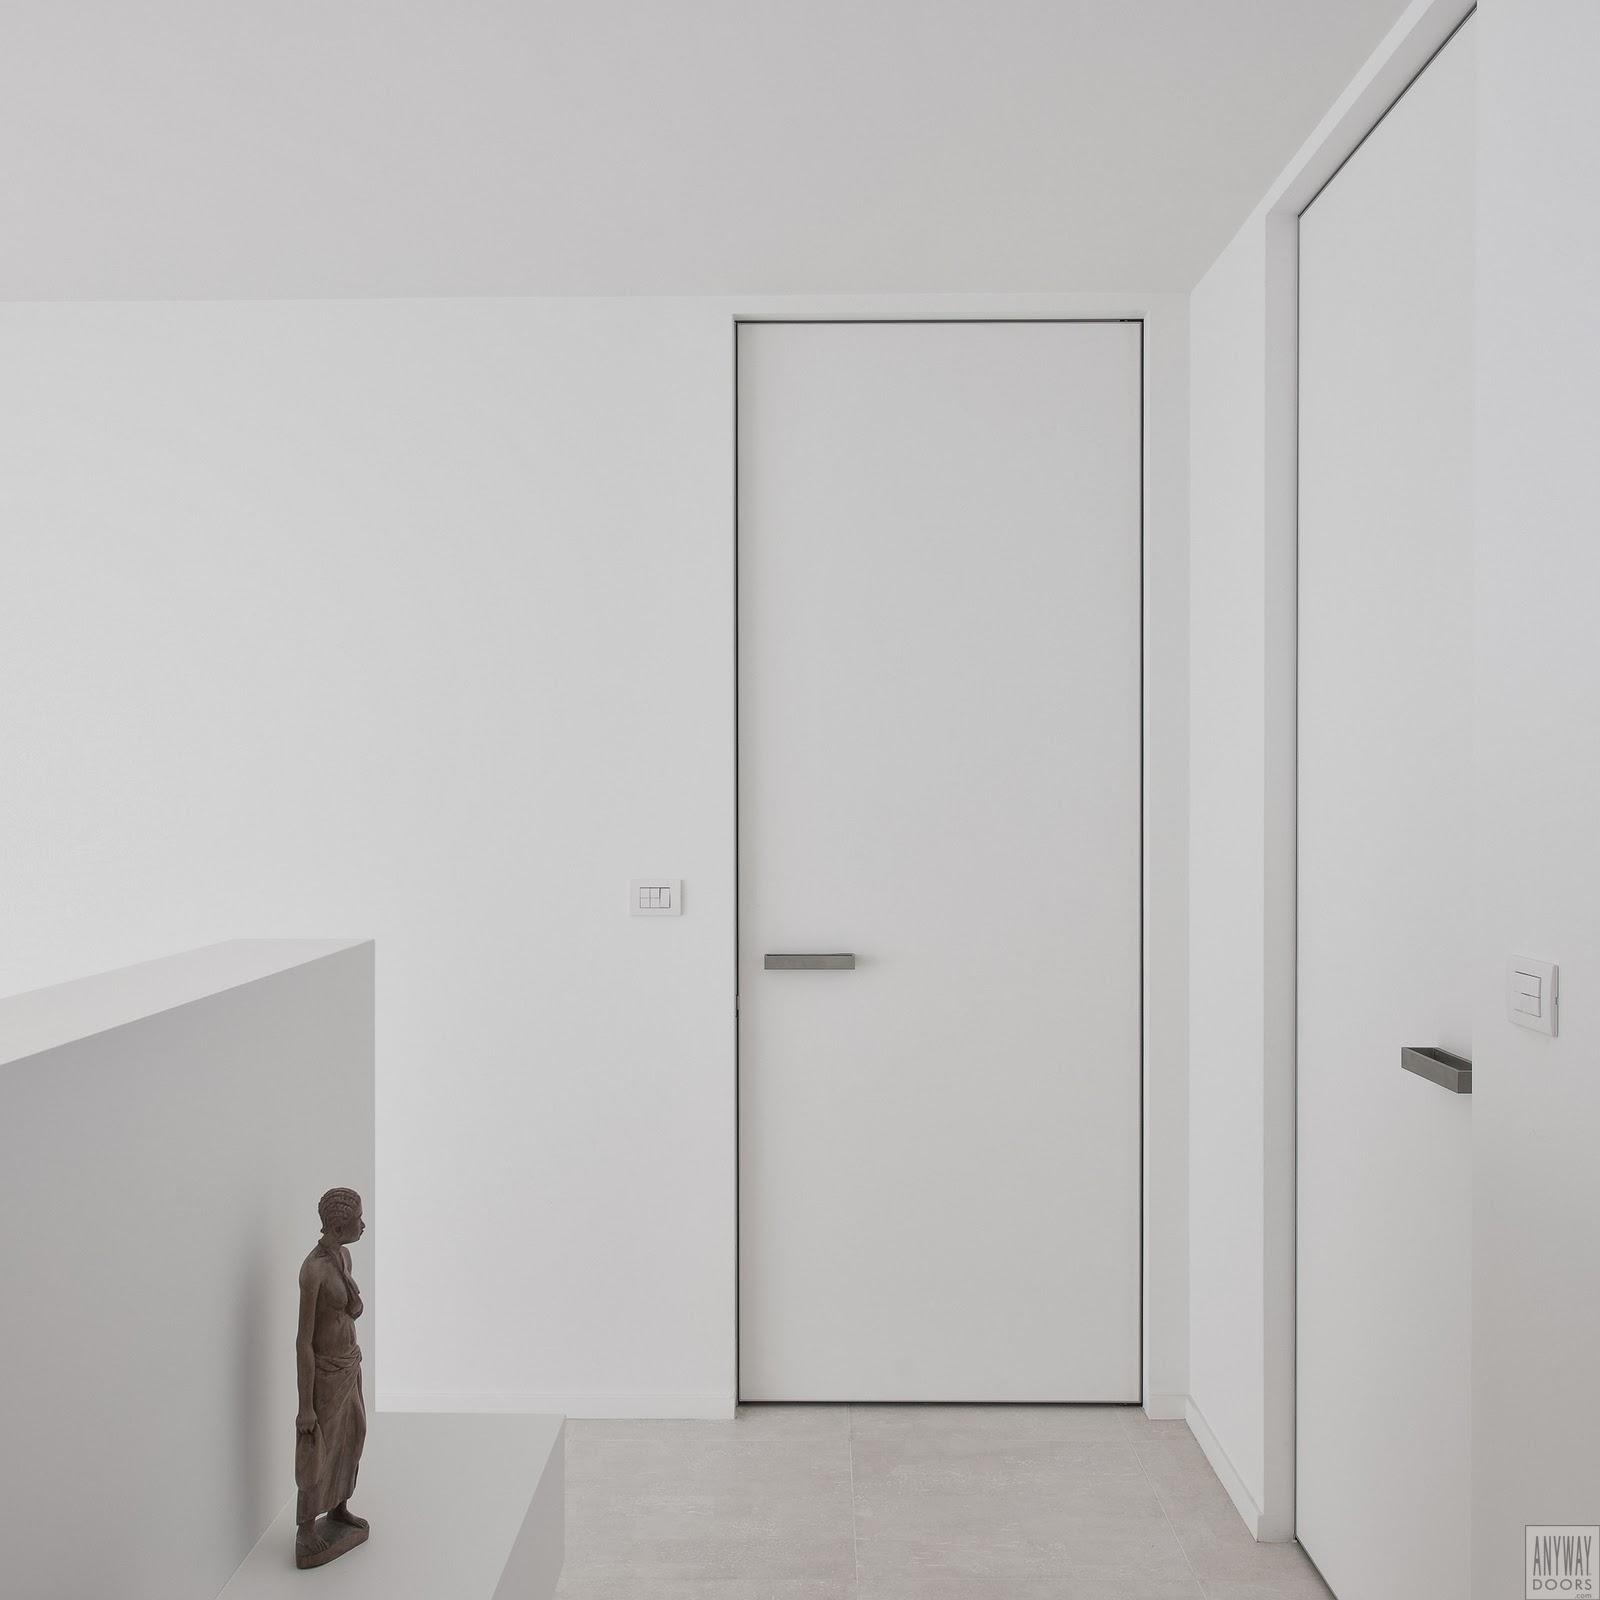 Kenmerkend voordeel nul ANYWAYdoors | binnendeuren - dressings - inloopkasten en schuifdeuren op  maat.: Moderne deuren zonder kozijn op maat met onzichtbare scharnieren.